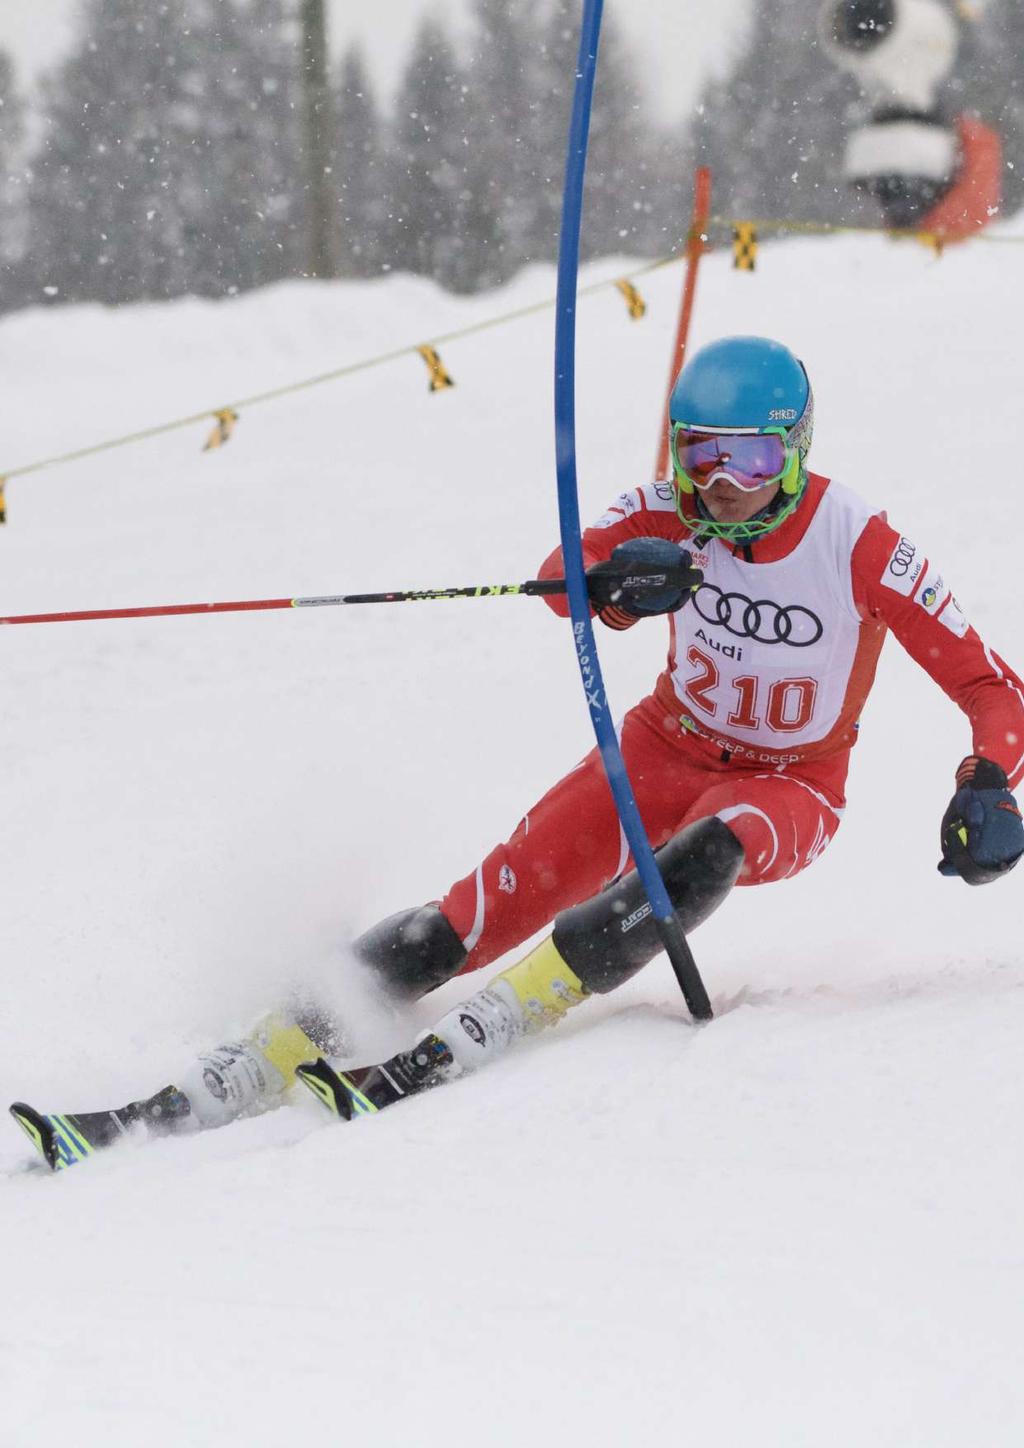 VildandensDK... - for skiers by skiers VildandensDK startede med at sælge konkurrenceskiudstyr til dedikerede klub- og landsholdsløbere i 2017.